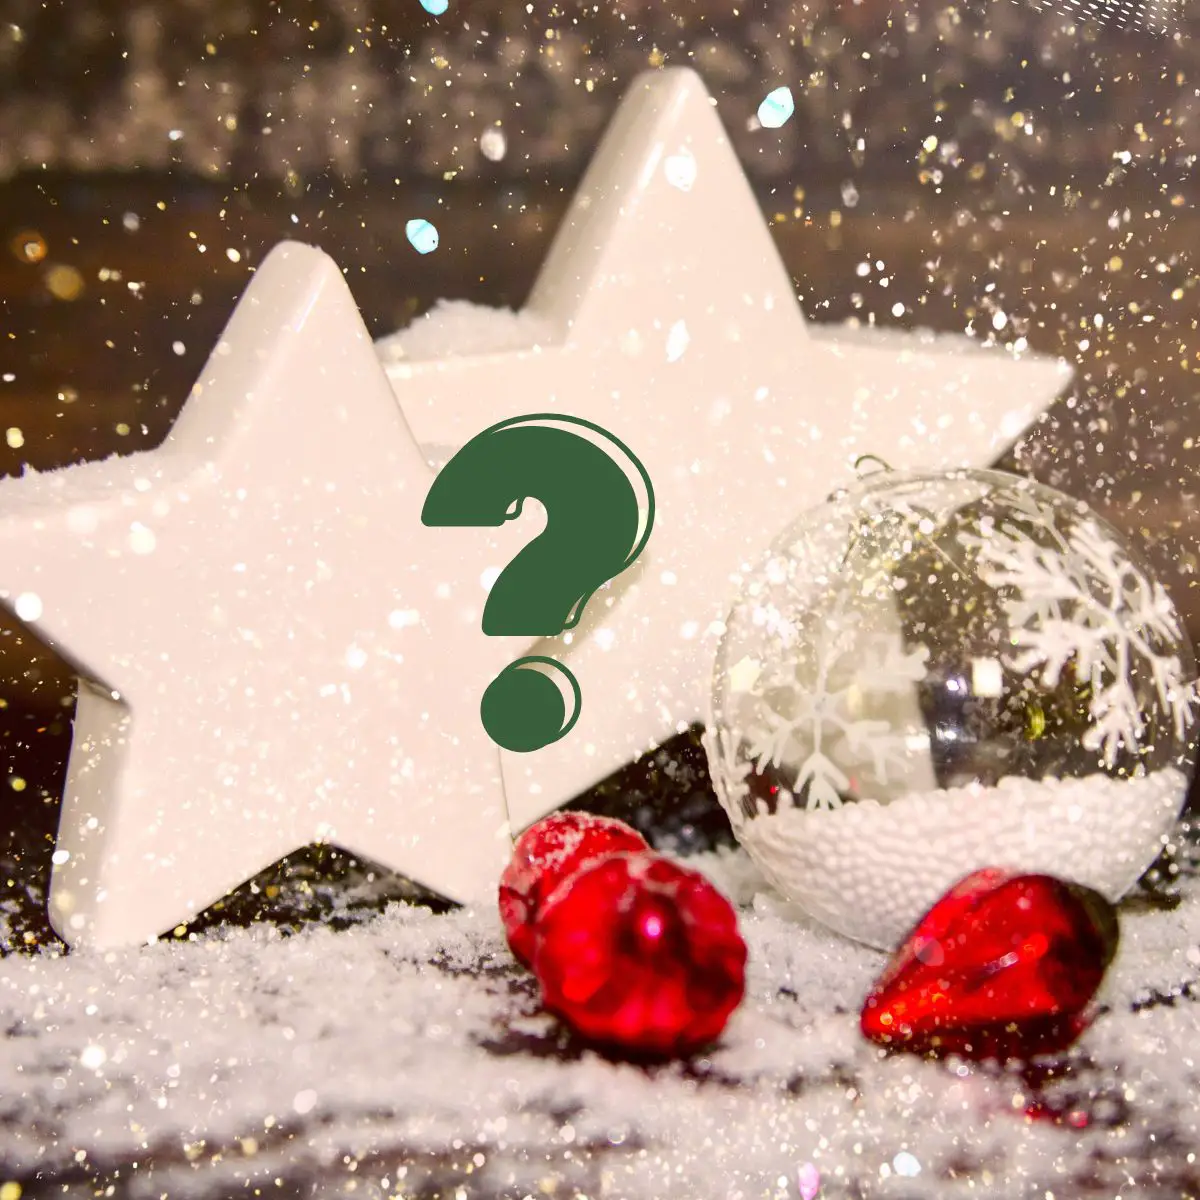 Zwei weiße Porzellan-Sterne mit einer durchsichtigen, mit Kunstschnee gefüllten Weihnachtsbaumkugel. Davor liegt roter Christbaumschmuck.